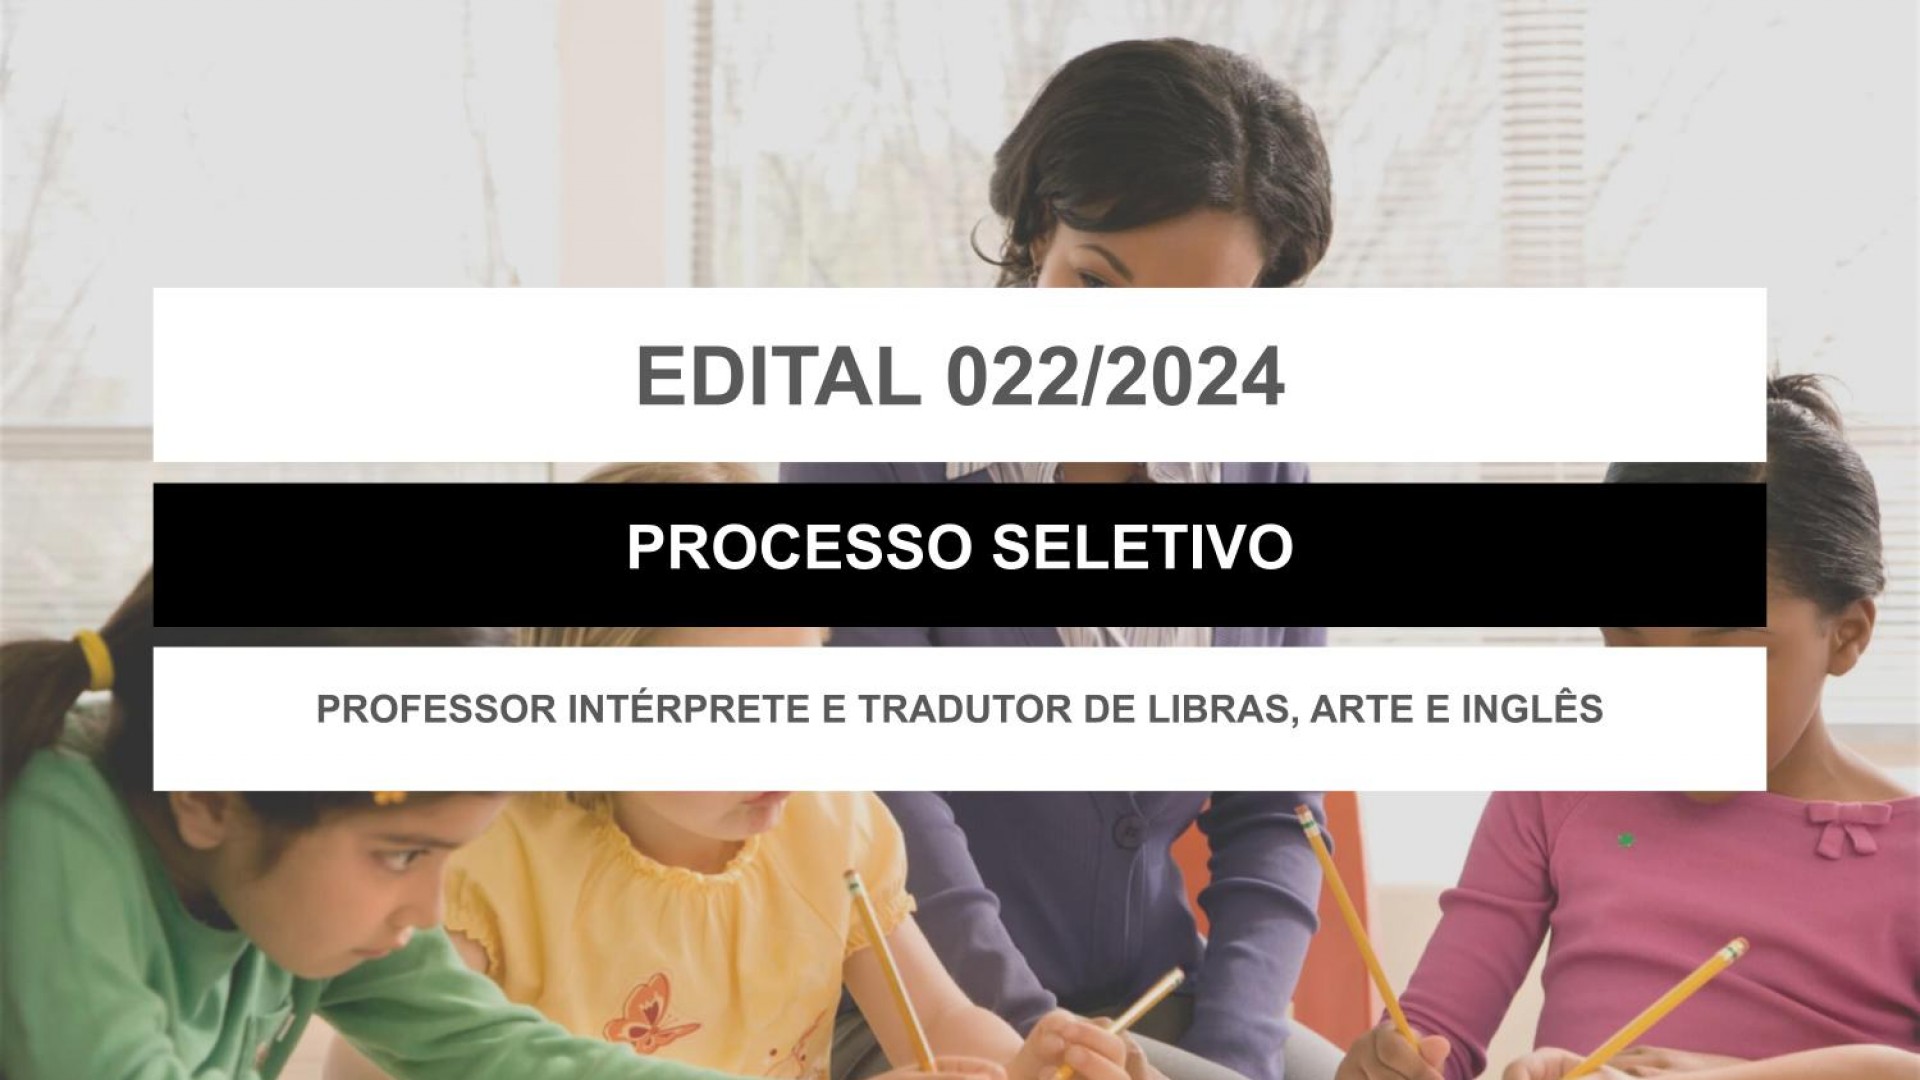 EDITAL EDUCAÇÃO Nº 022/2024 - PROFESSOR INTÉRPRETE E TRADUTOR DE LIBRAS, ARTE E INGLÊS